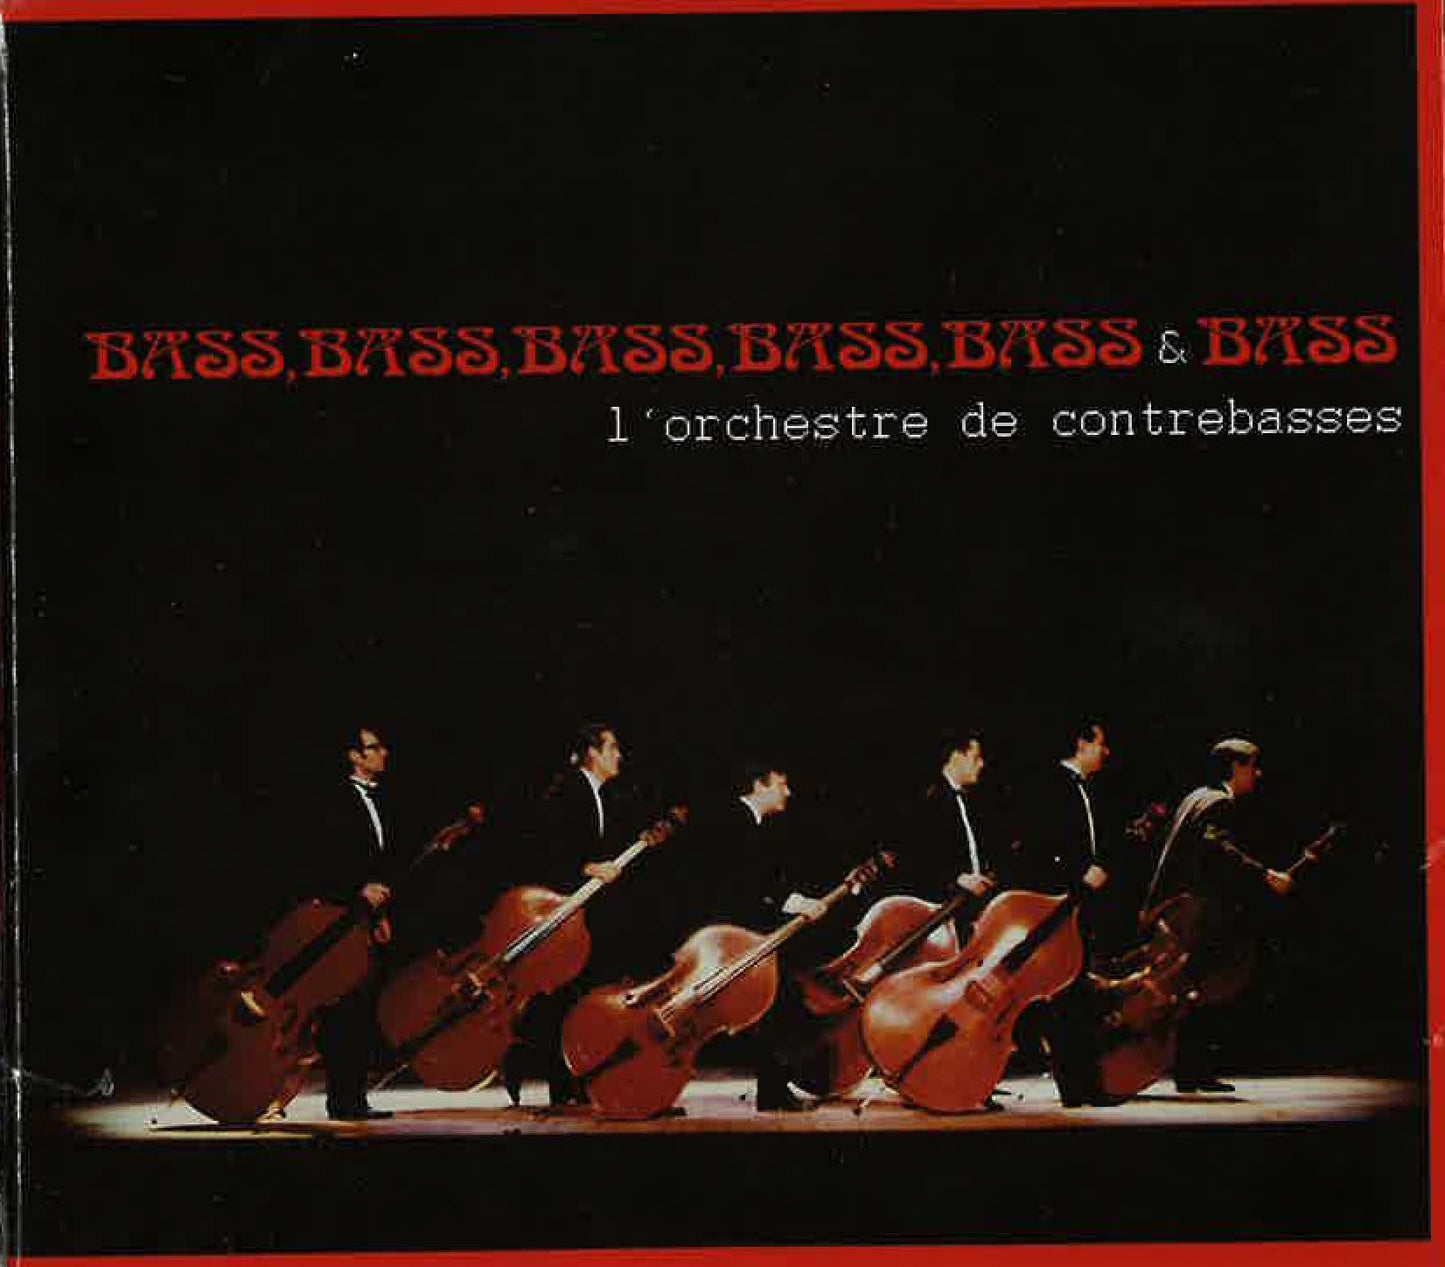 L'Orchestre de Contrebasses: Bass, Bass, Bass, Bass, Bass & Bass